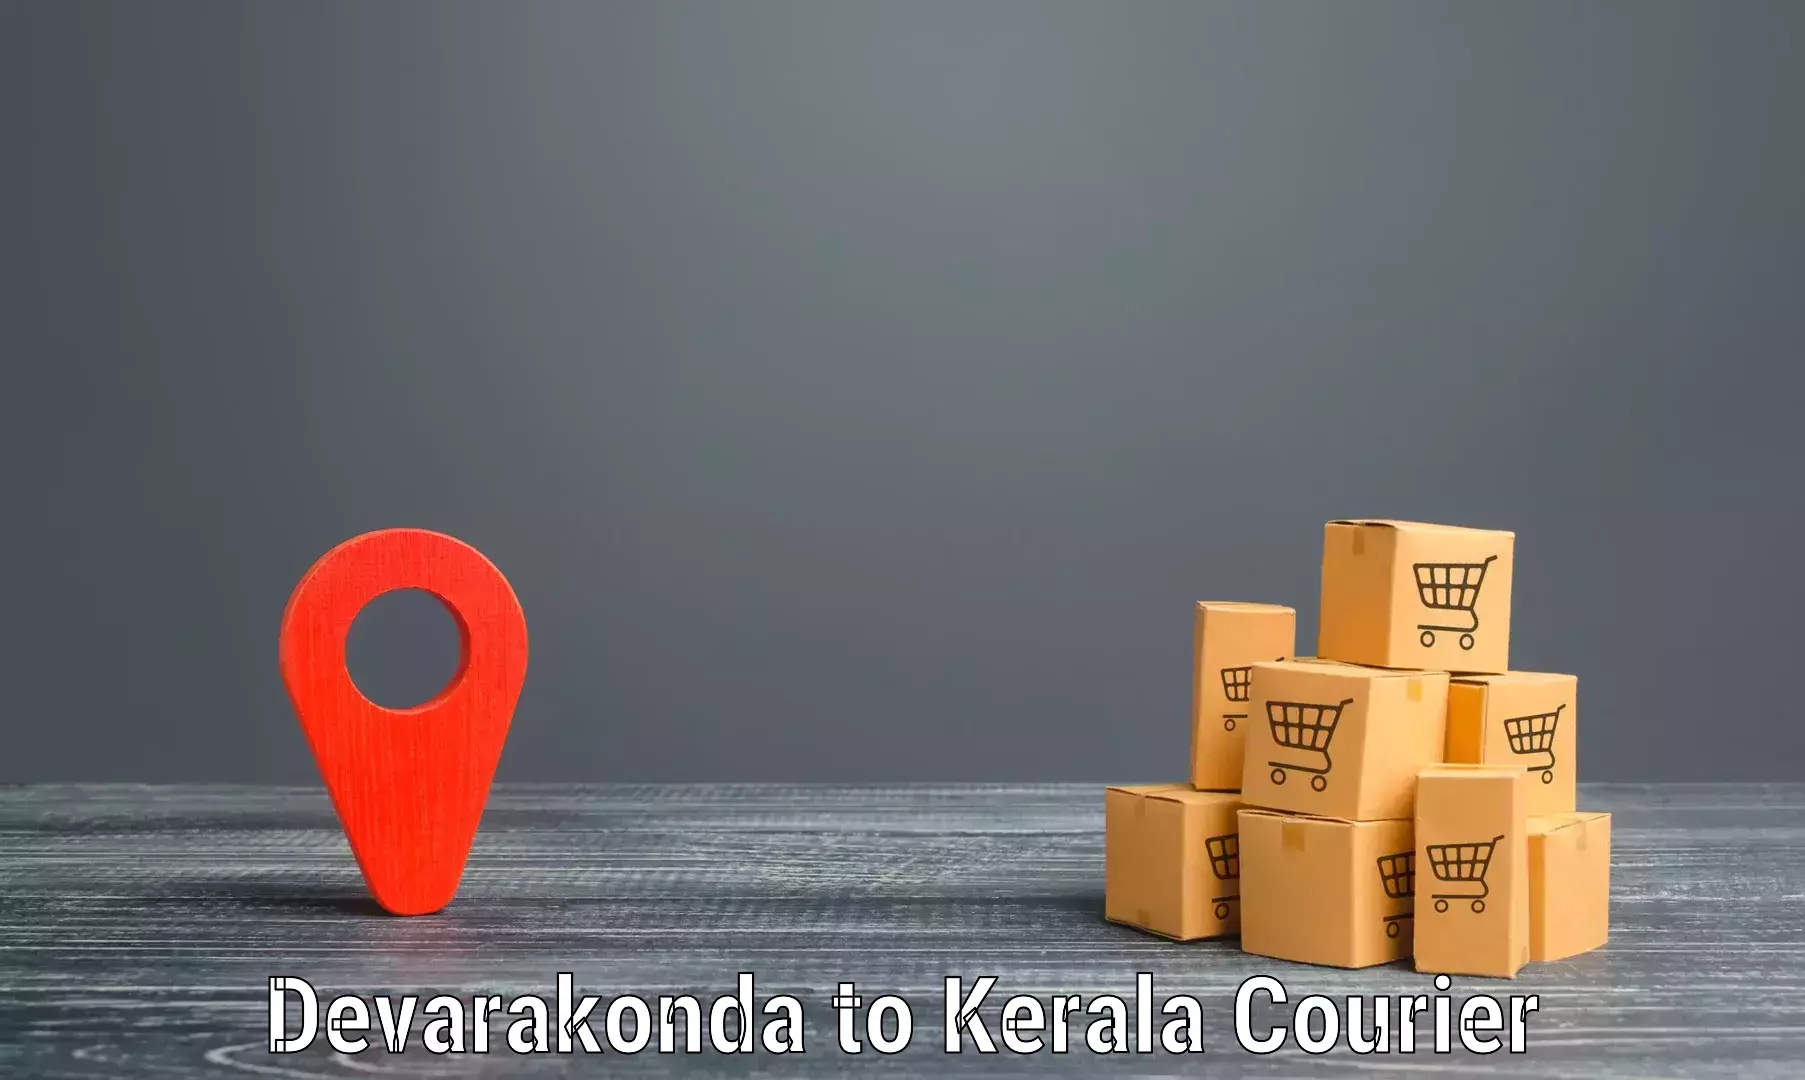 Tailored freight services Devarakonda to Kakkayam